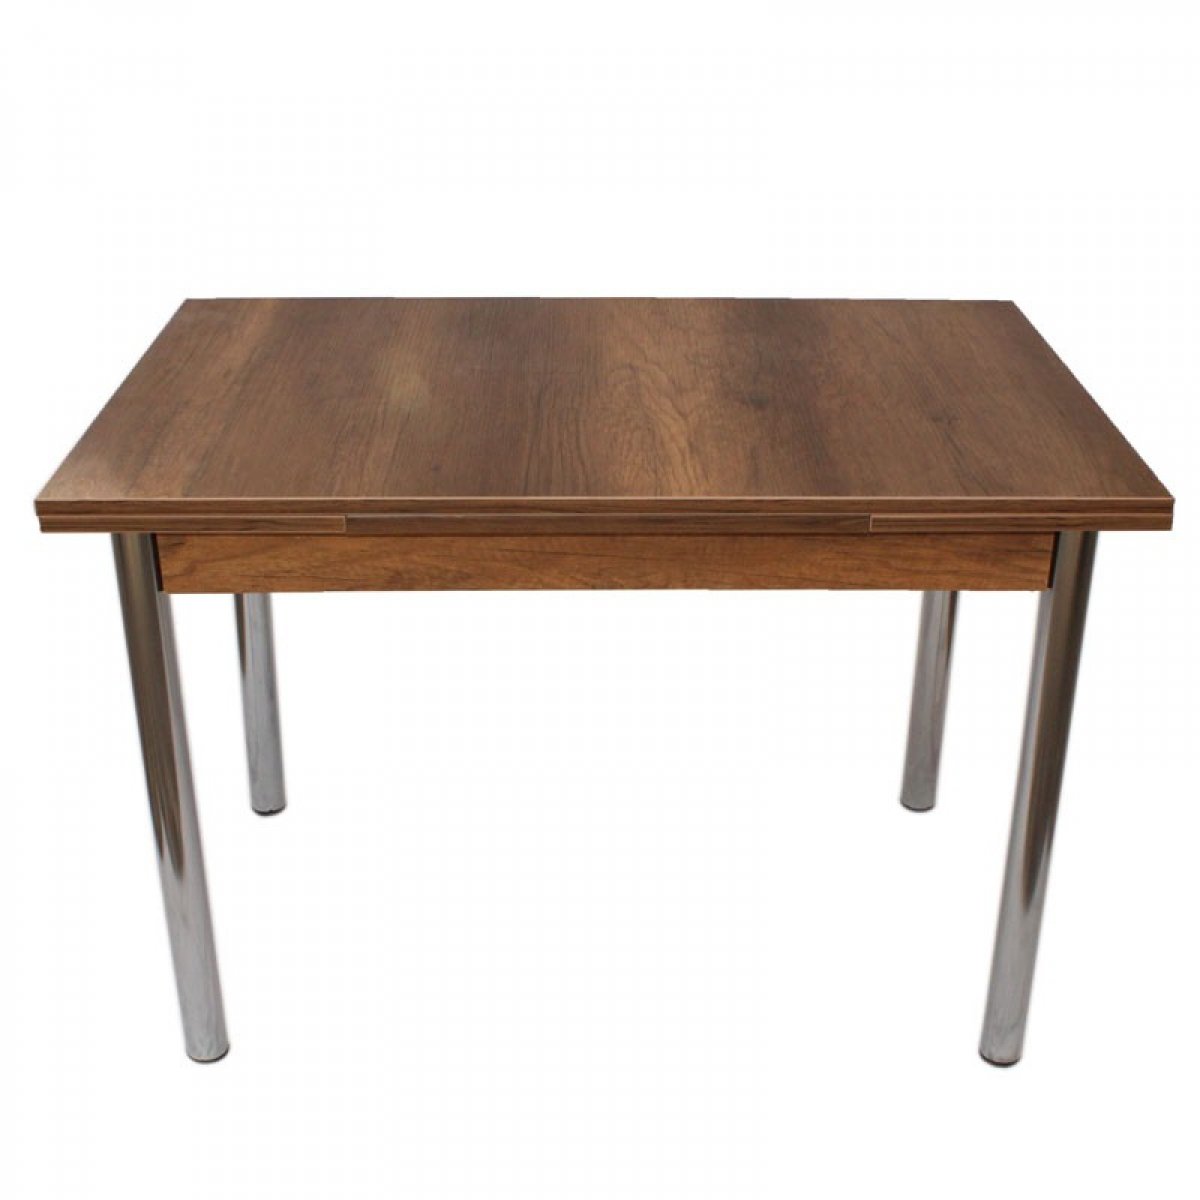 Τραπέζι “ROLLING” ορθογώνιο ανοιγόμενο από mdf/μέταλλο σε χρώμα καρυδί 110x70x75